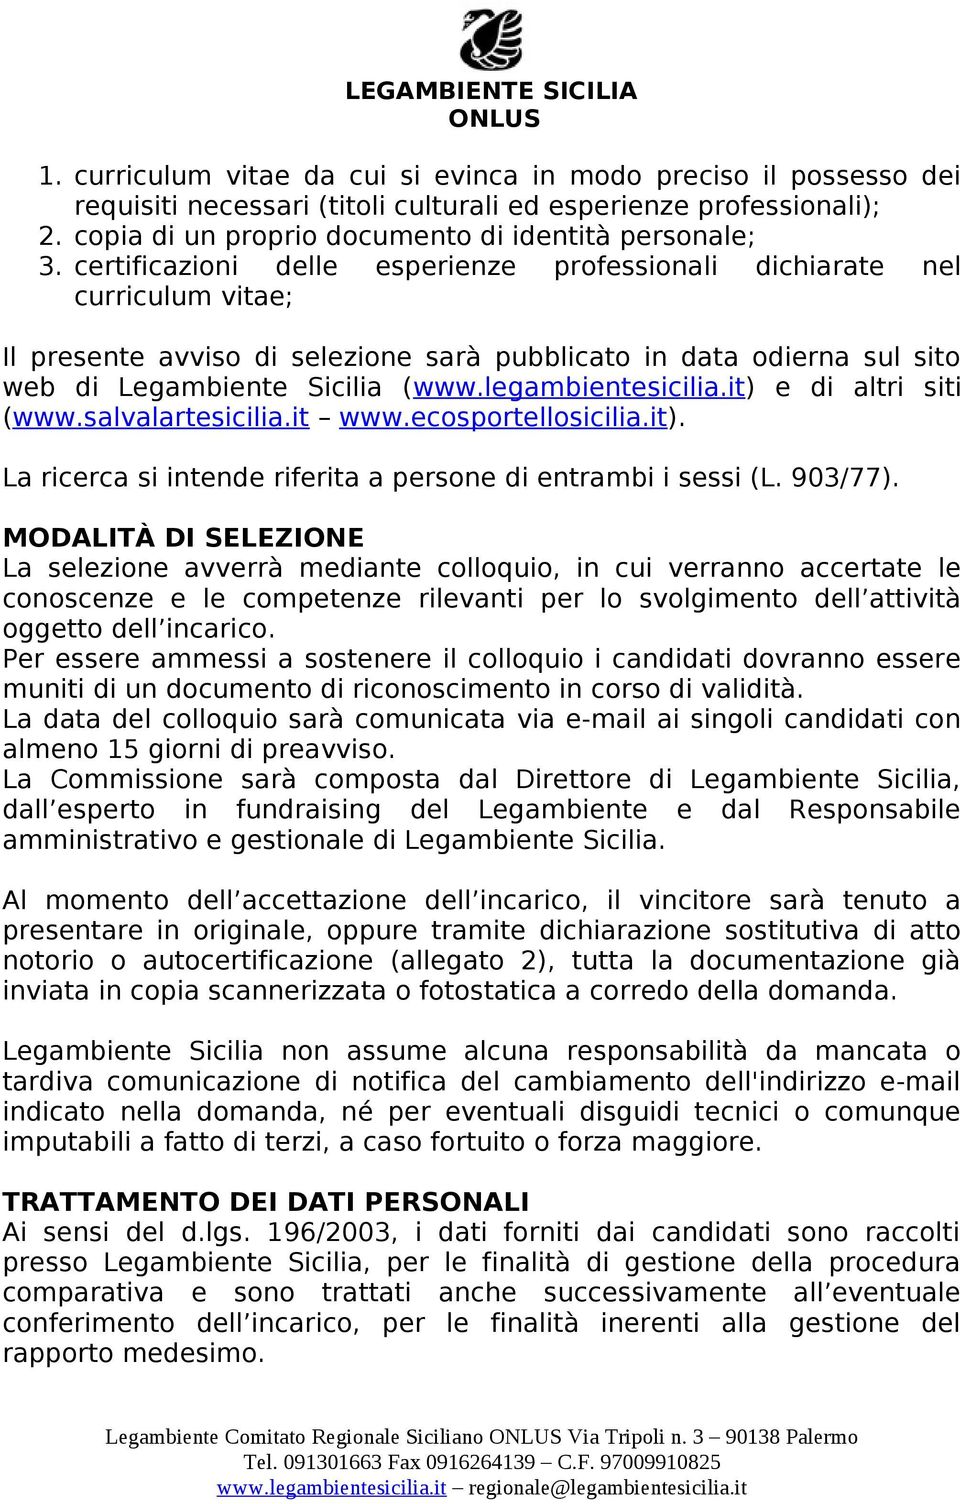 legambientesicilia.it) e di altri siti (www.salvalartesicilia.it www.ecosportellosicilia.it). La ricerca si intende riferita a persone di entrambi i sessi (L. 903/77).